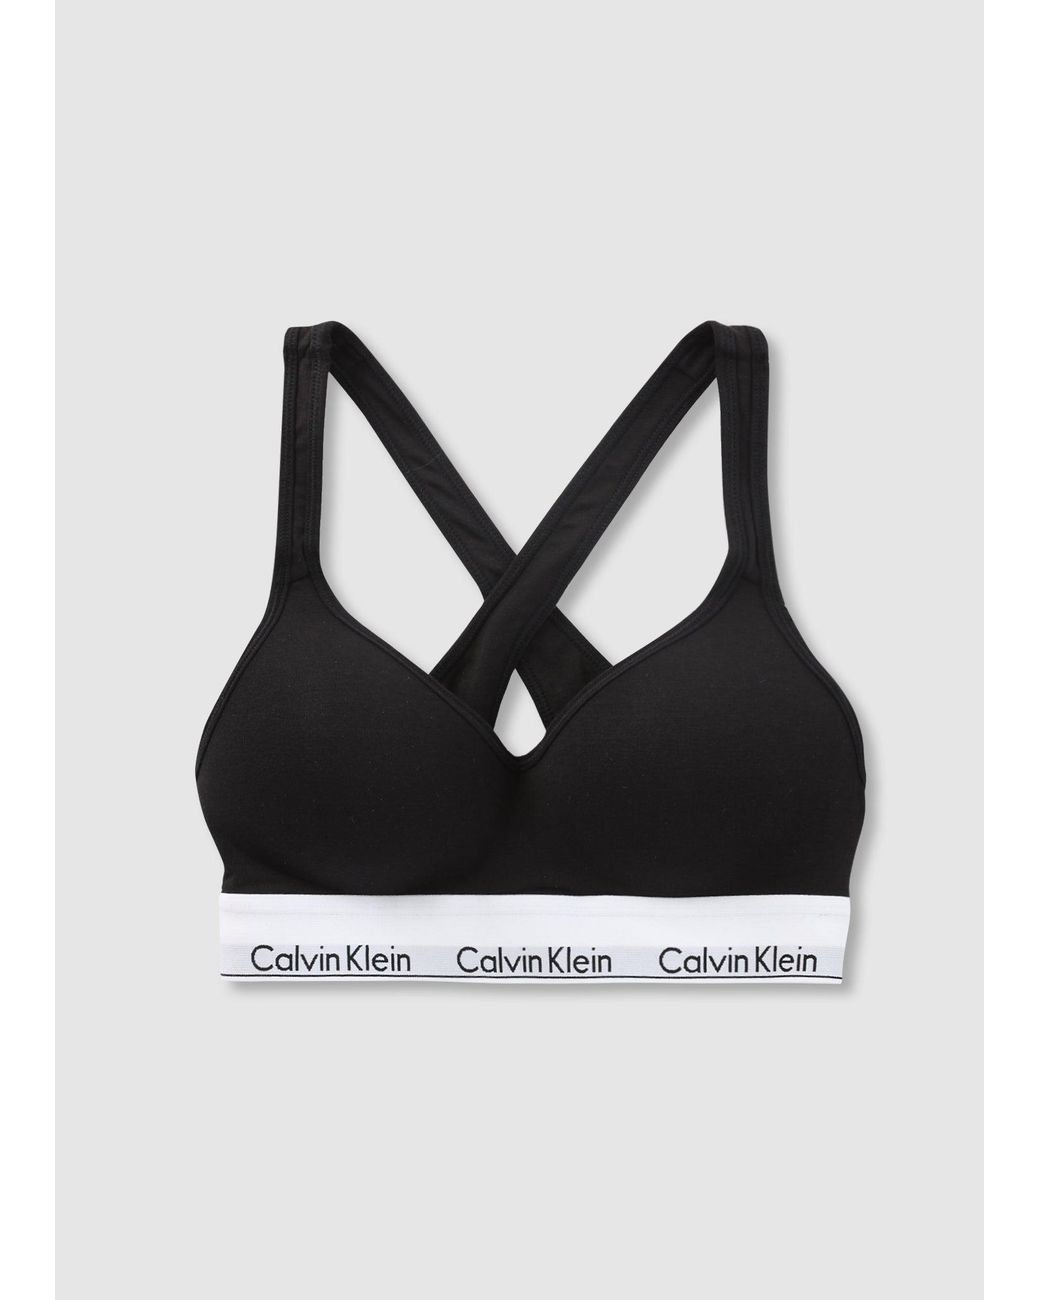 Calvin Klein Underwear Modern Cotton Lift Bralette in Black | Lyst